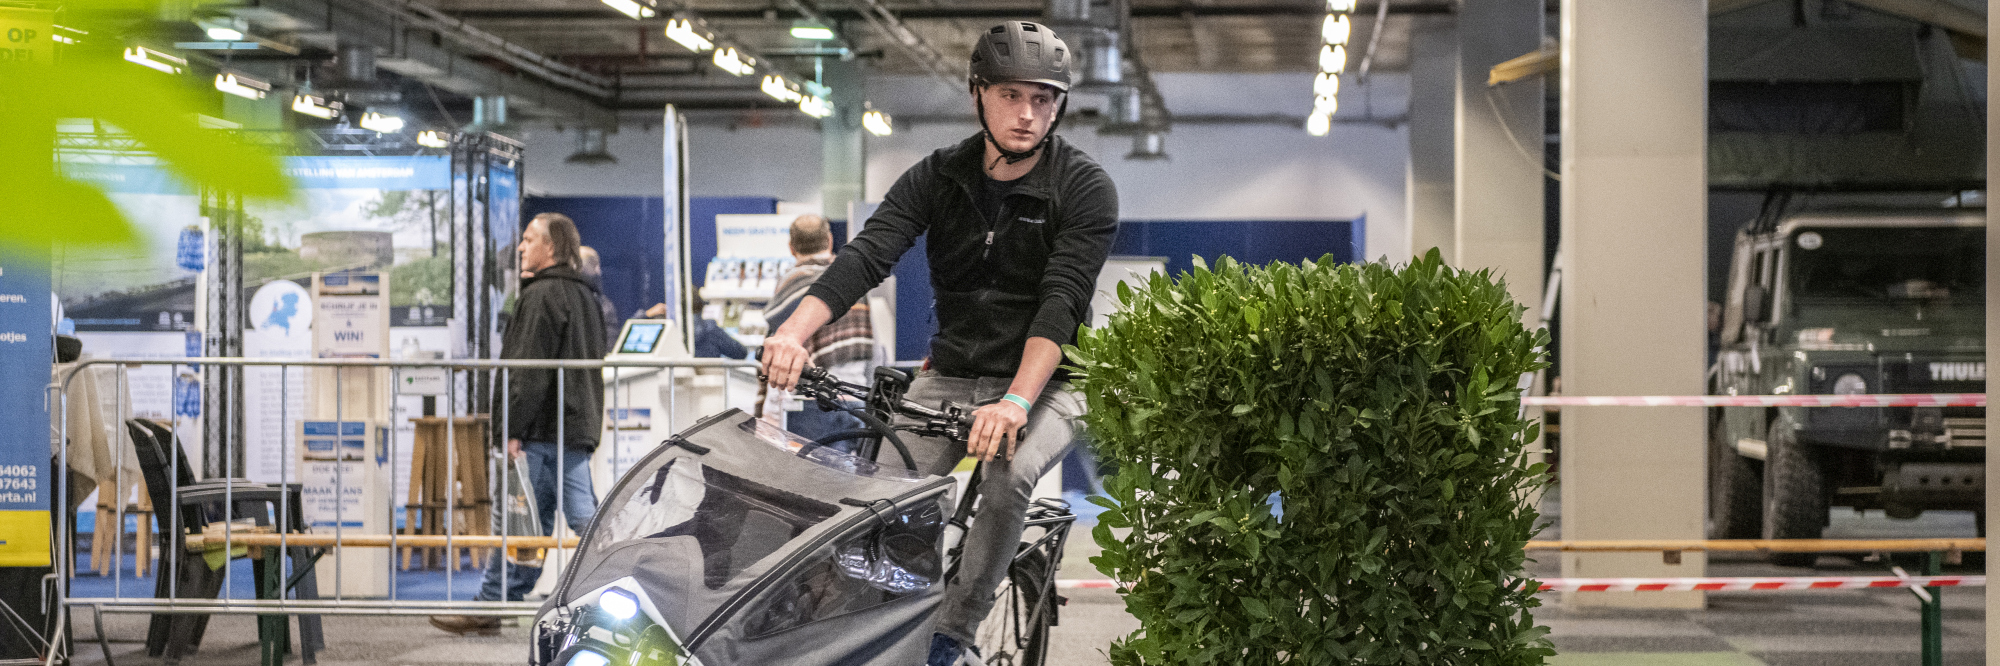 Op het grote indoor fiets- en e-bikeparcours van E-bike Challenge kun tal van modellen testen, ongehinderd door weer of wind.